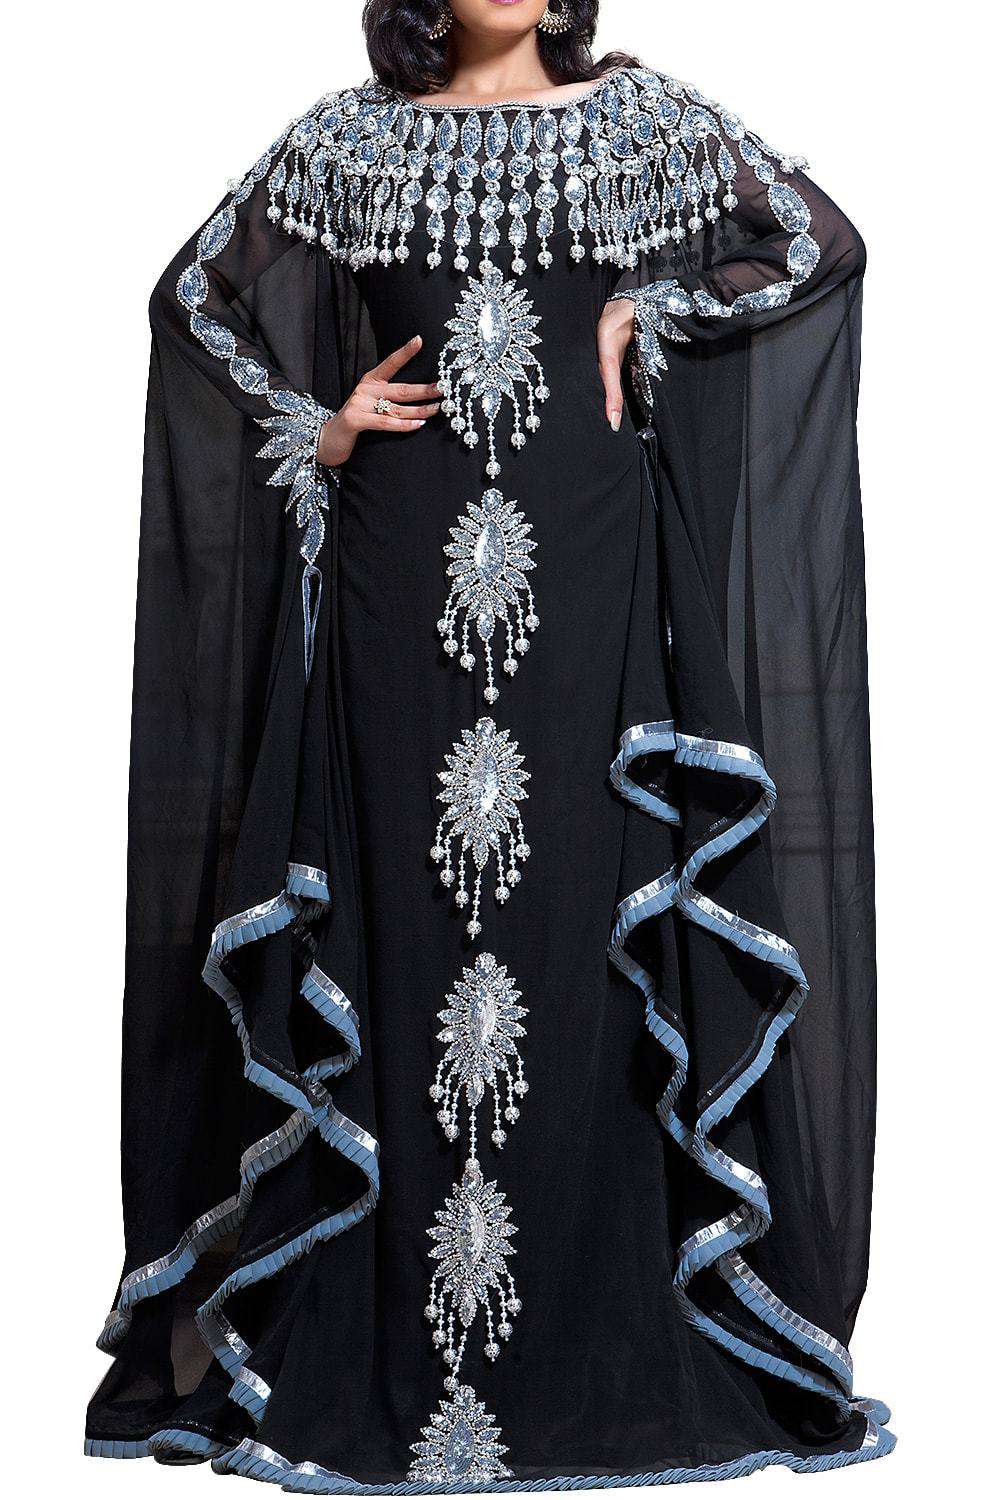 Fancy Black color Georgette Plus Size Islamic wedding kaftan